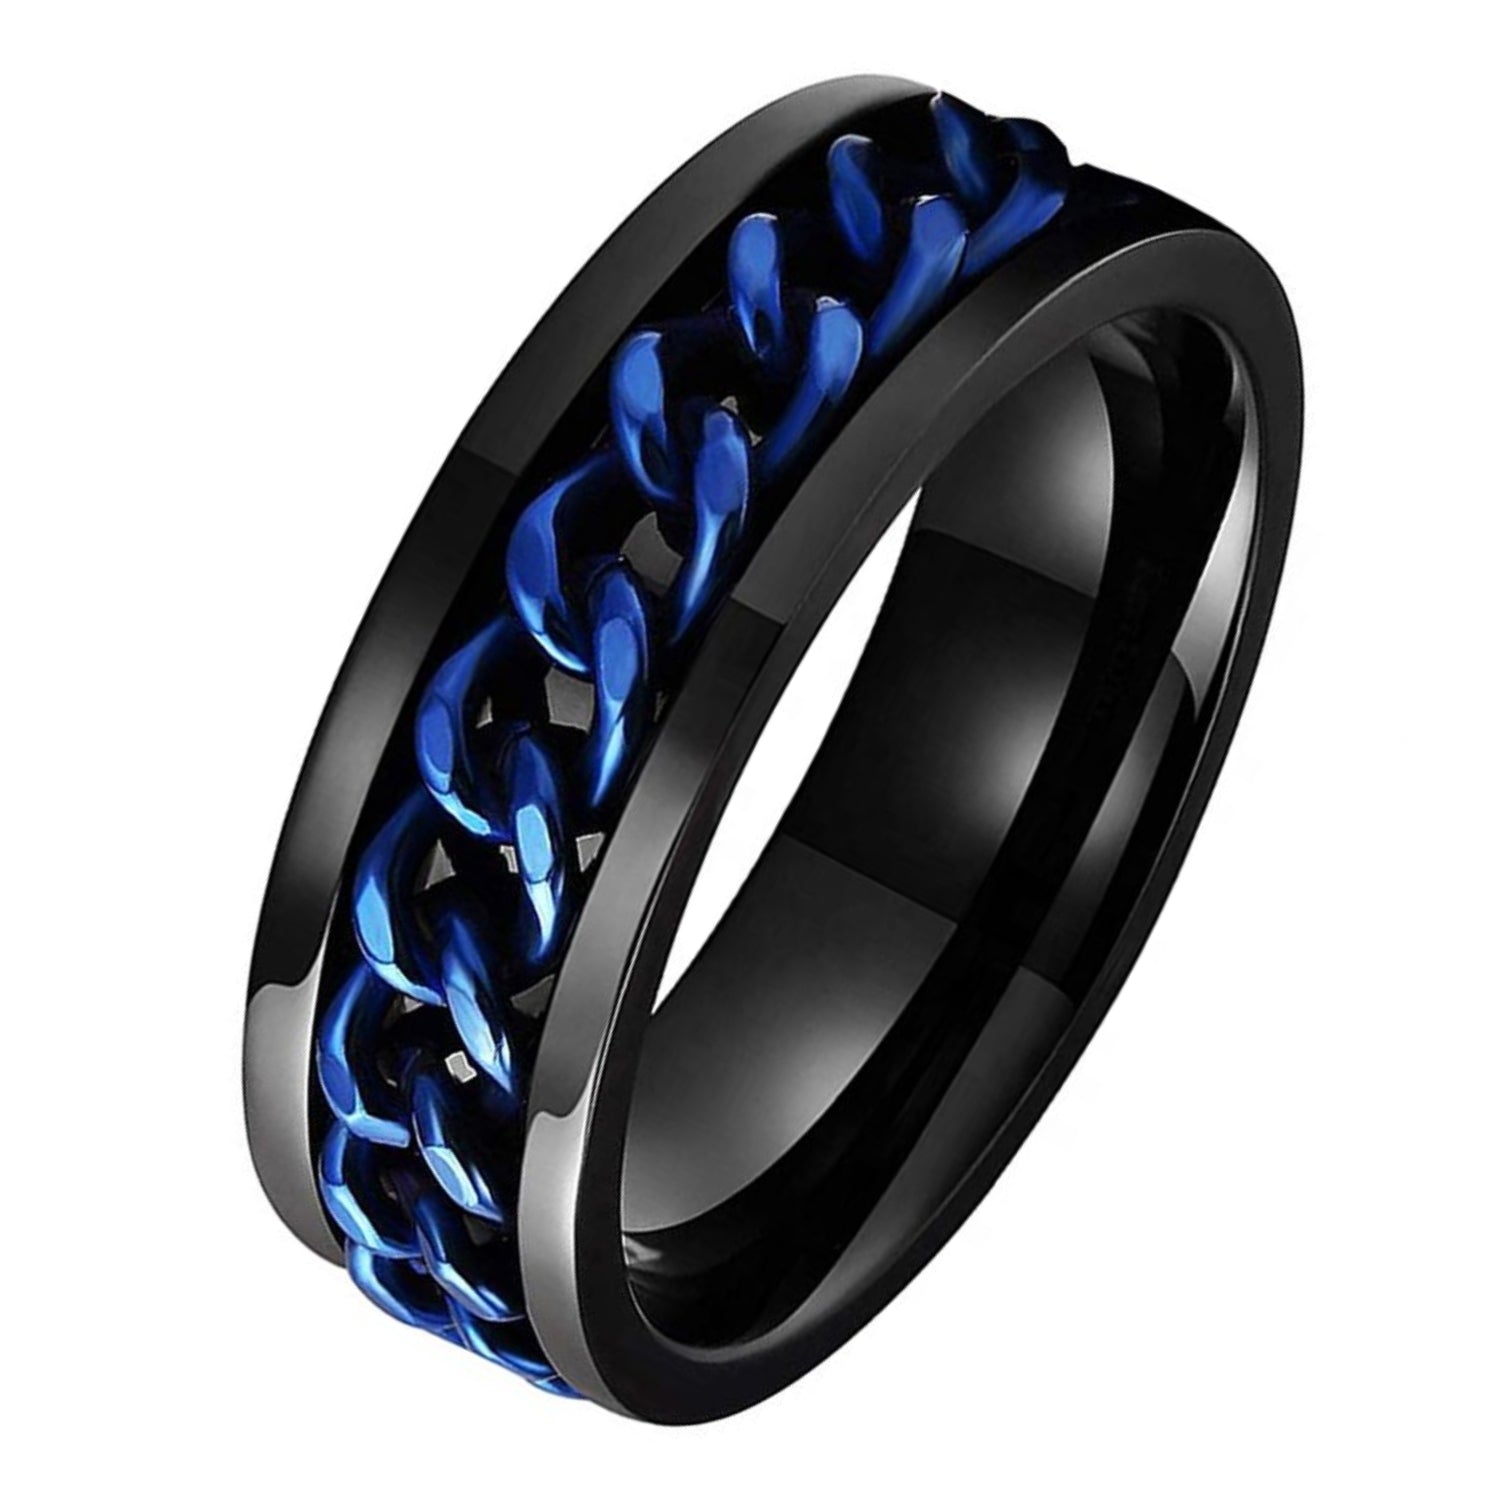 Anxiety Ring (Kettinkje) Blauwe ketting Zwarte ring